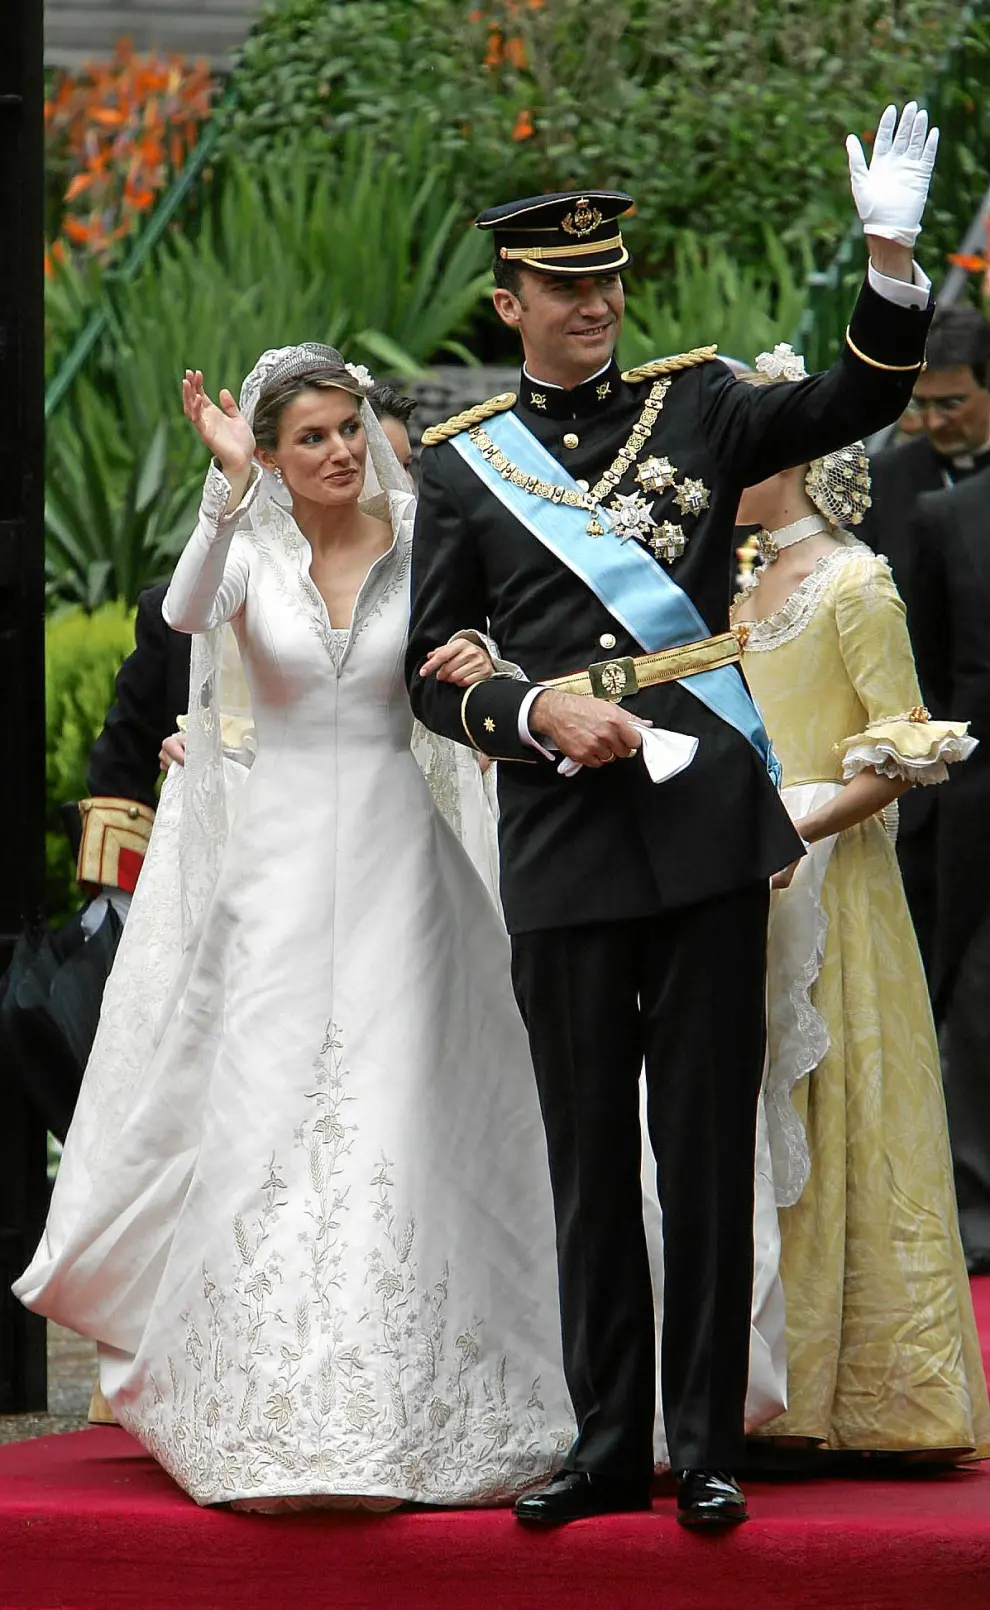 a reina Letizia, el día de su boda, luciendo el traje de novia del aragonés Manuel Pertegaz.